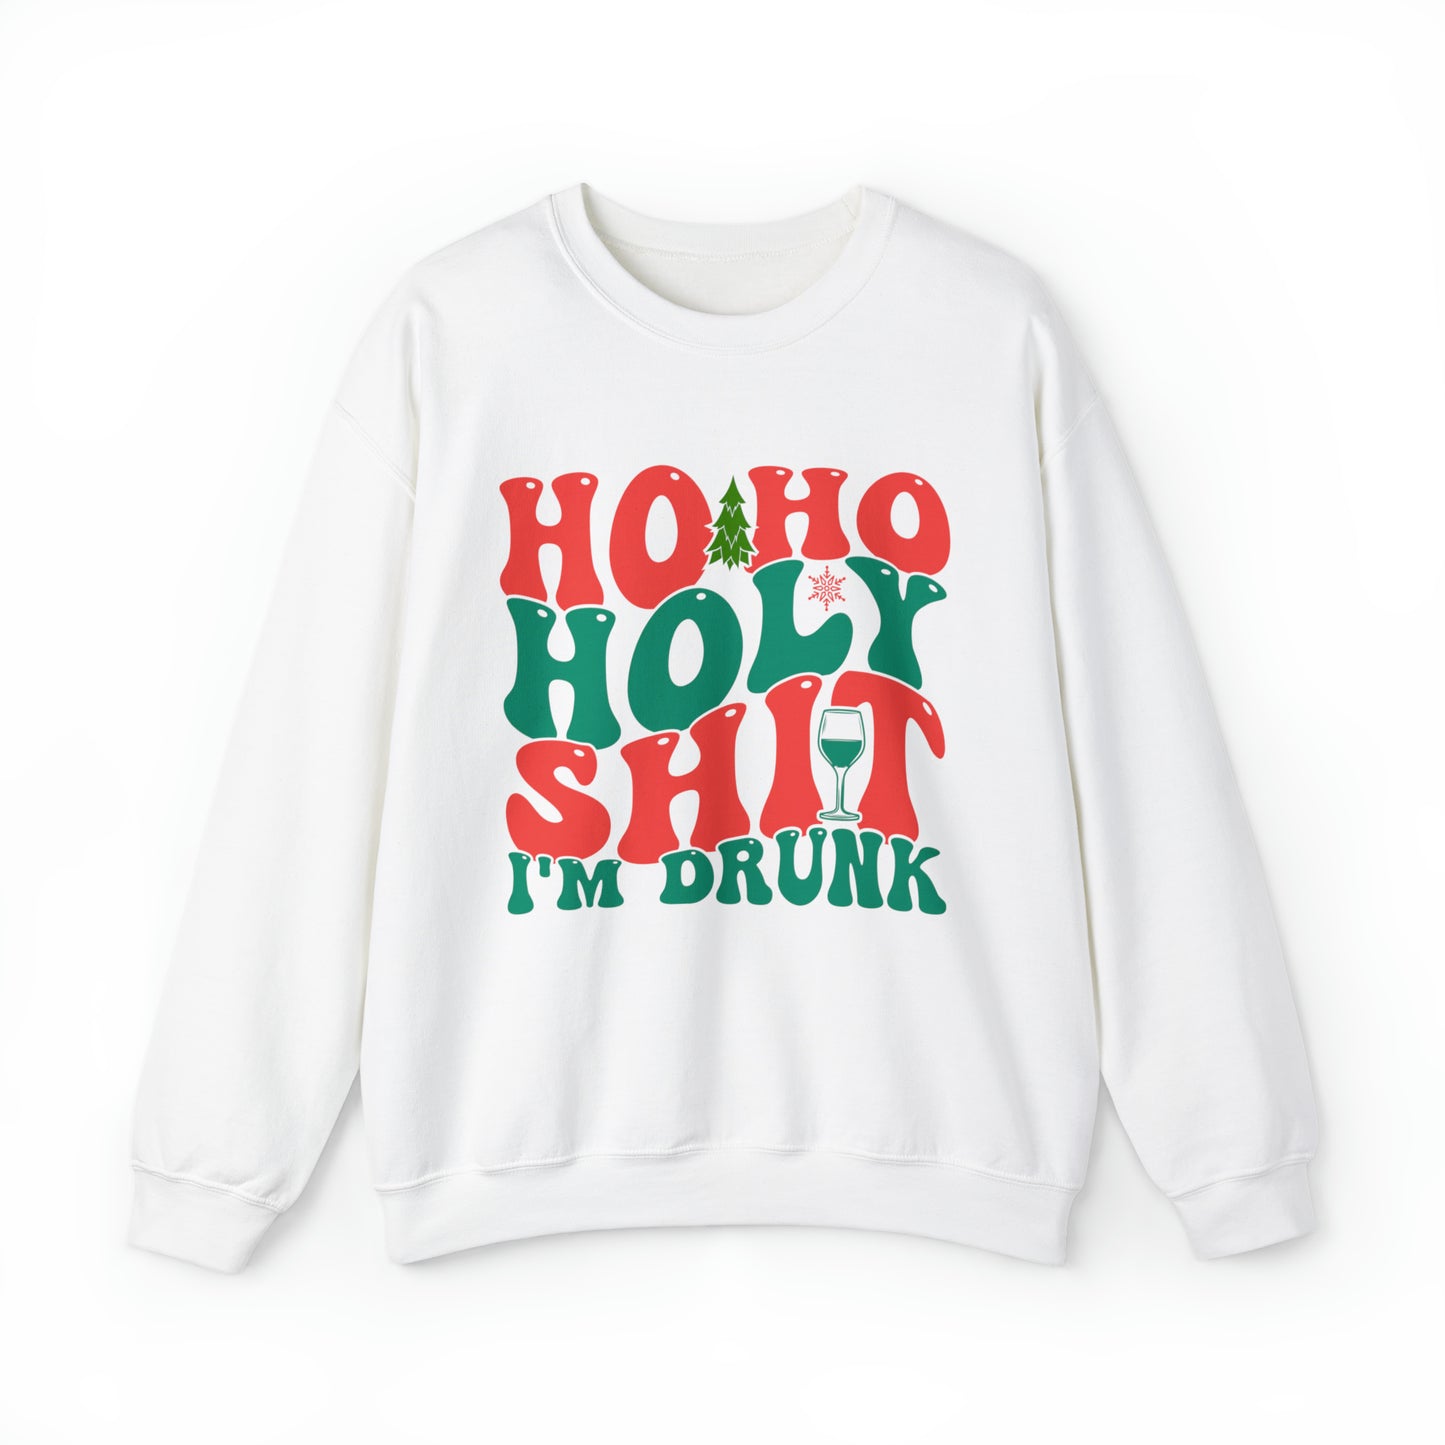 HO HO HO I'm drunk Women's and Men's Christmas Crewneck Sweatshirt